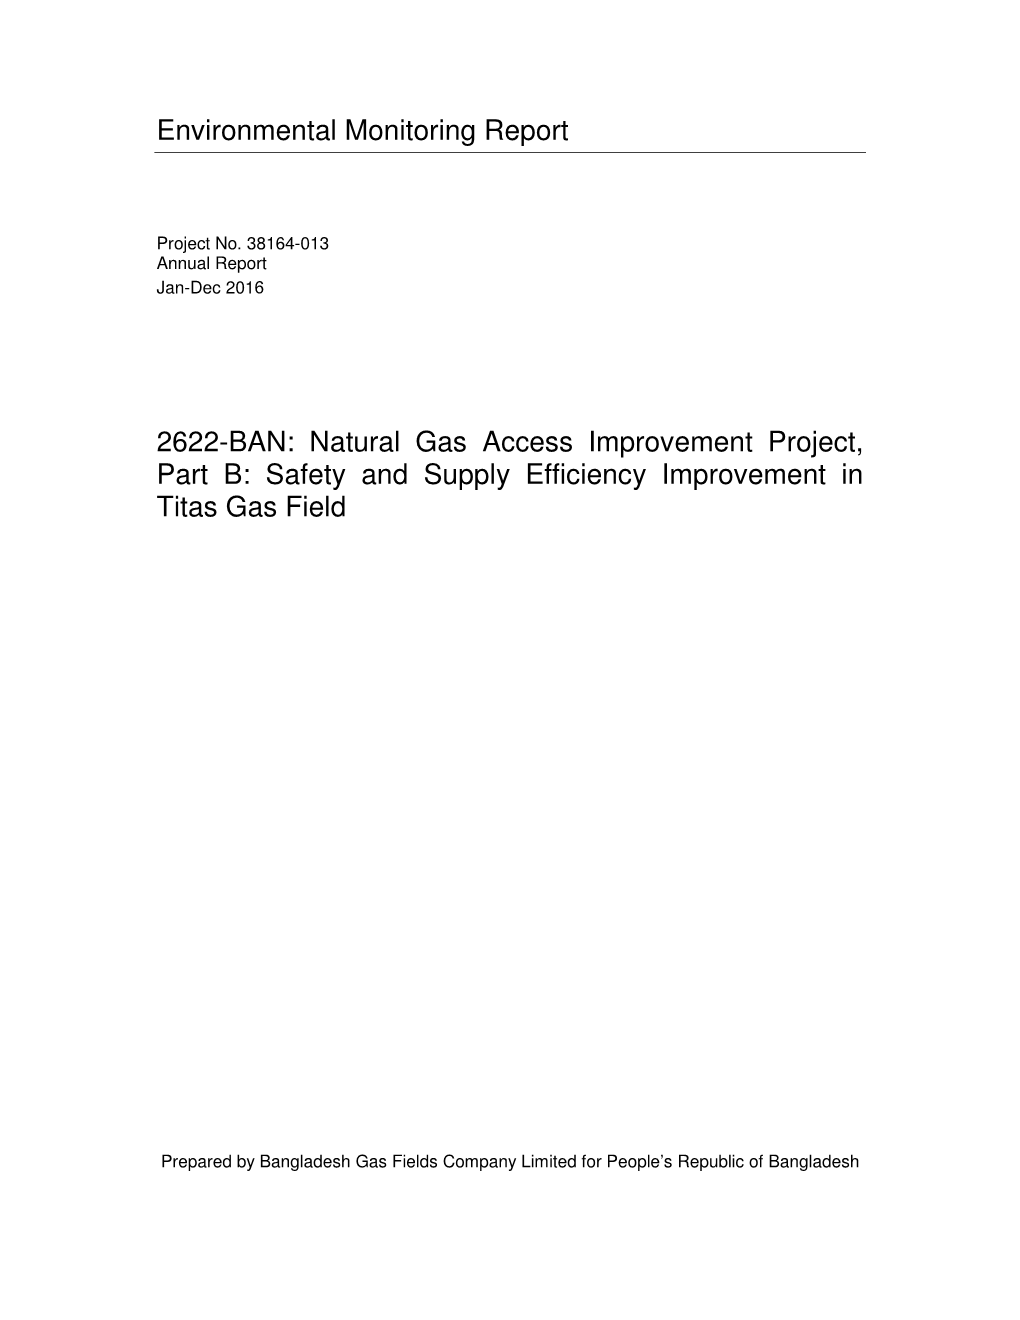 Environmental Monitoring Report 2622-BAN: Natural Gas Access